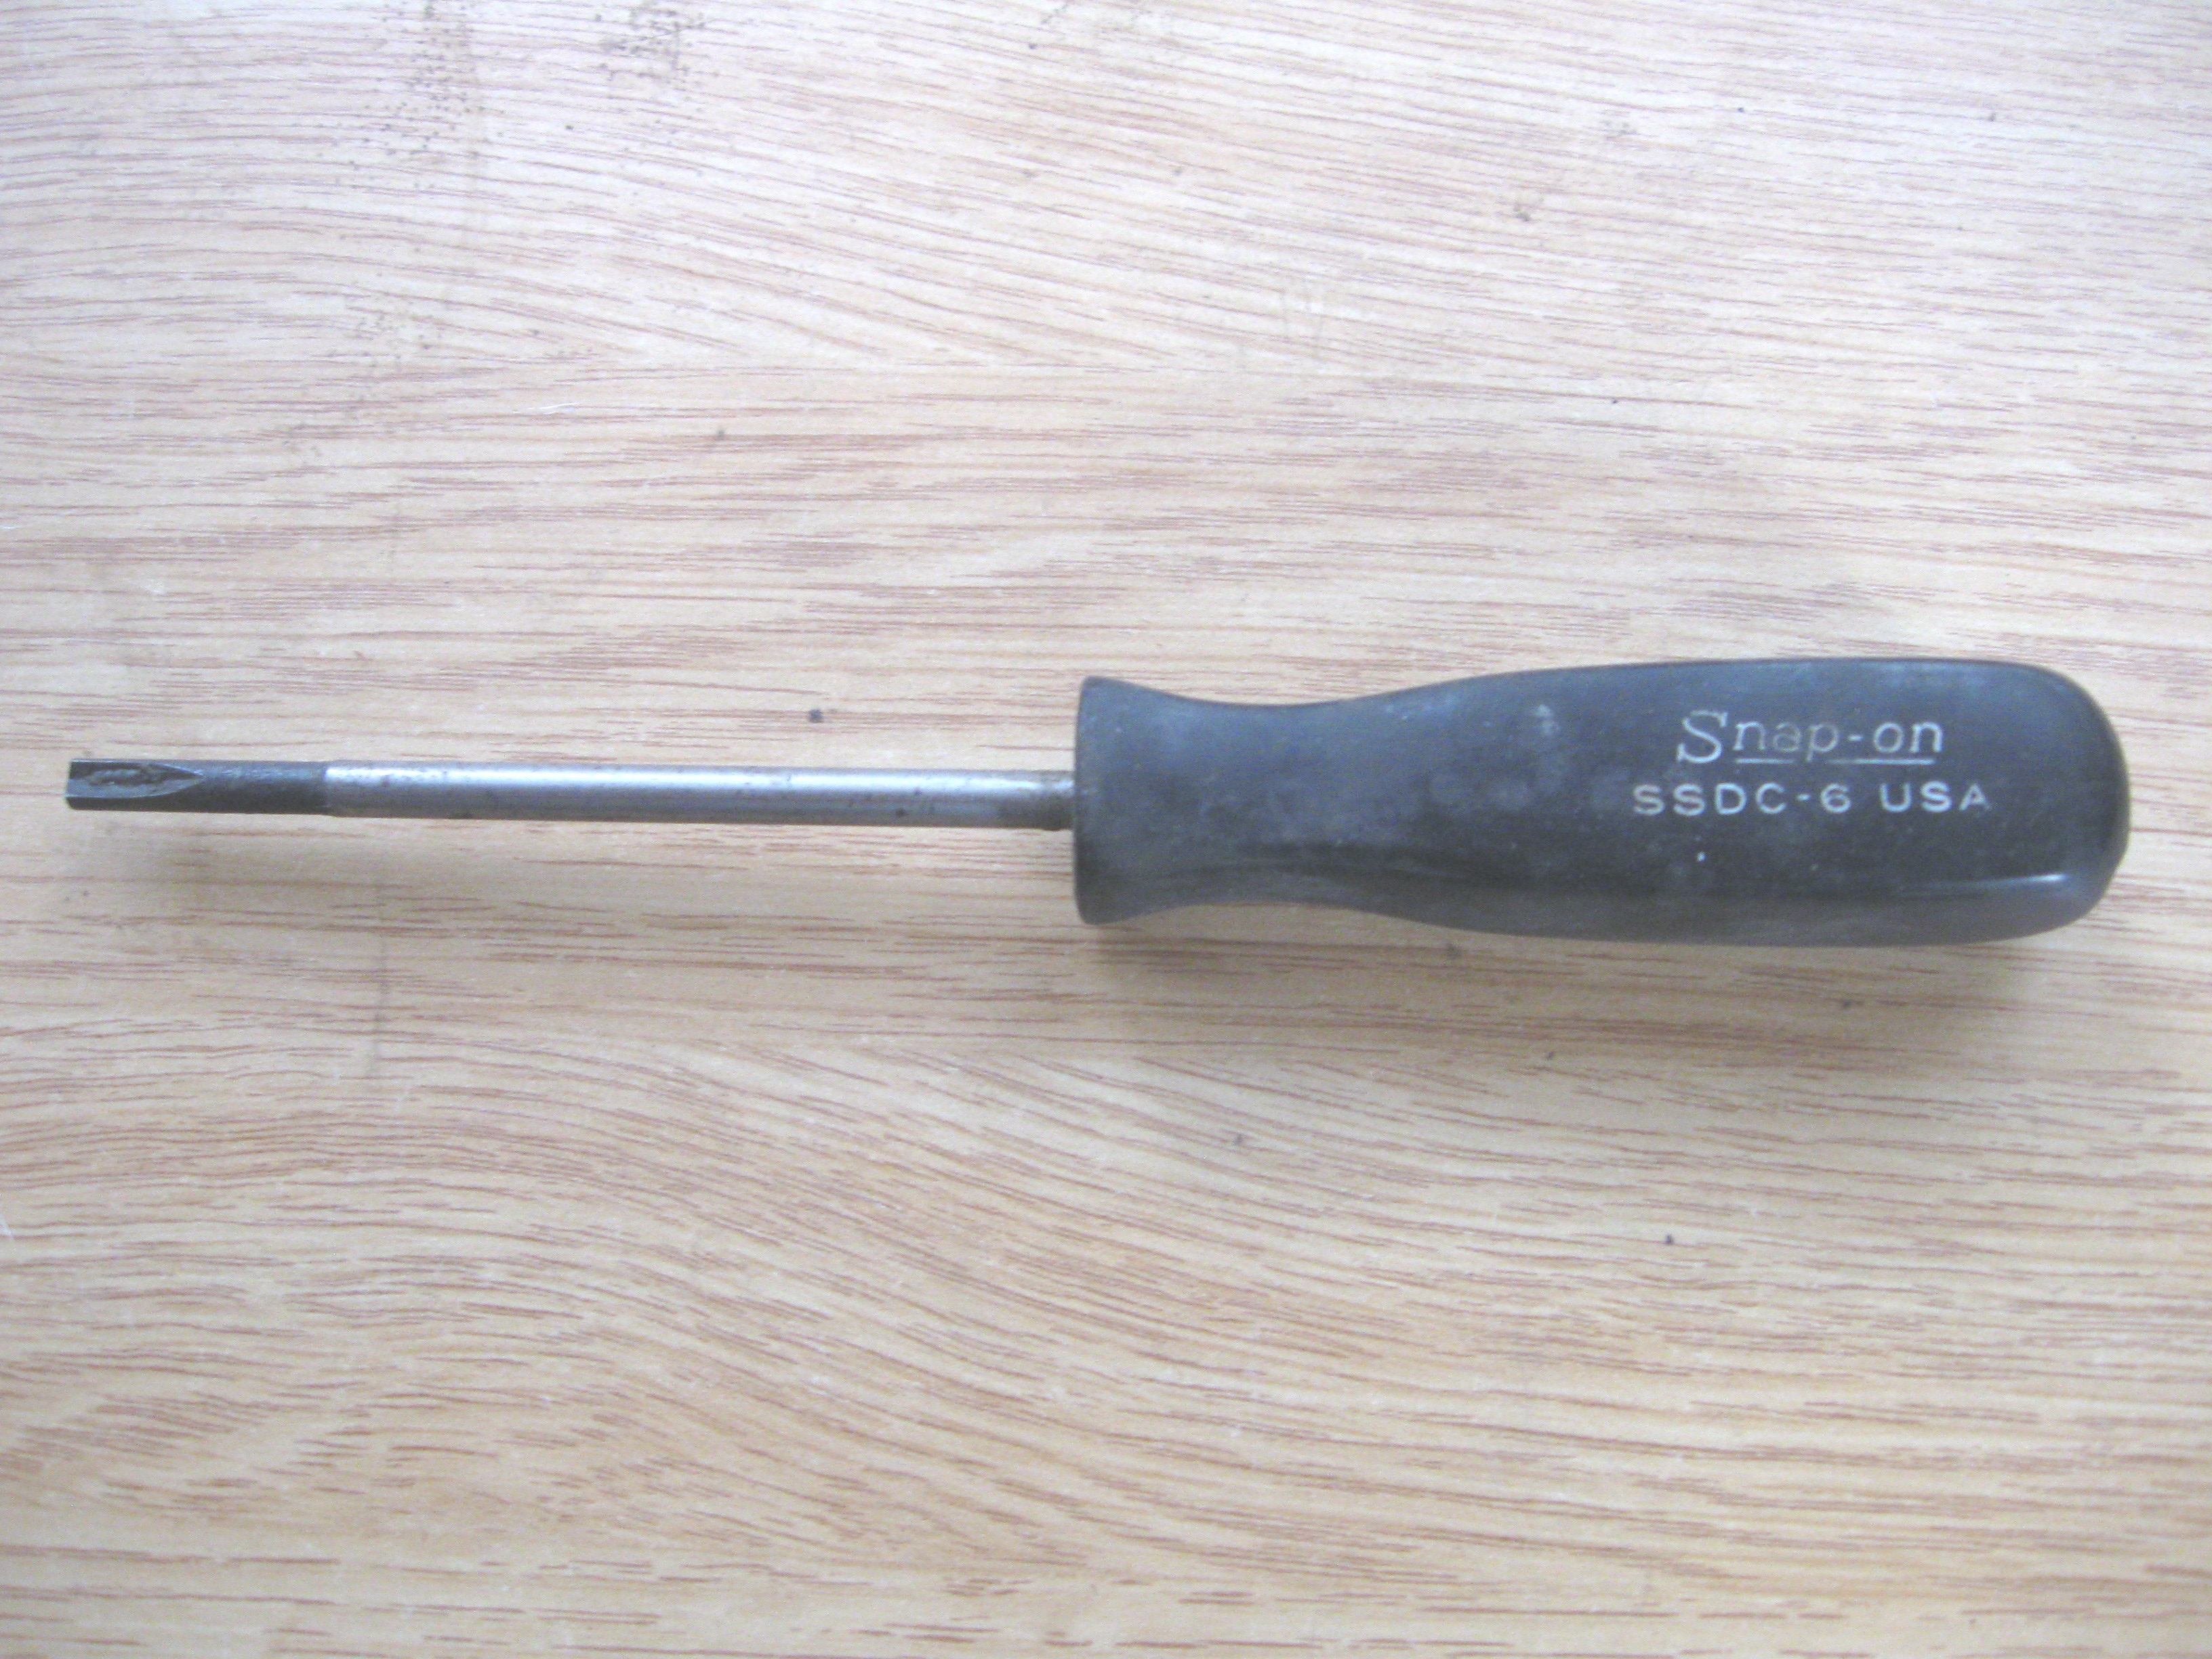 Clutch screwdriver size 6